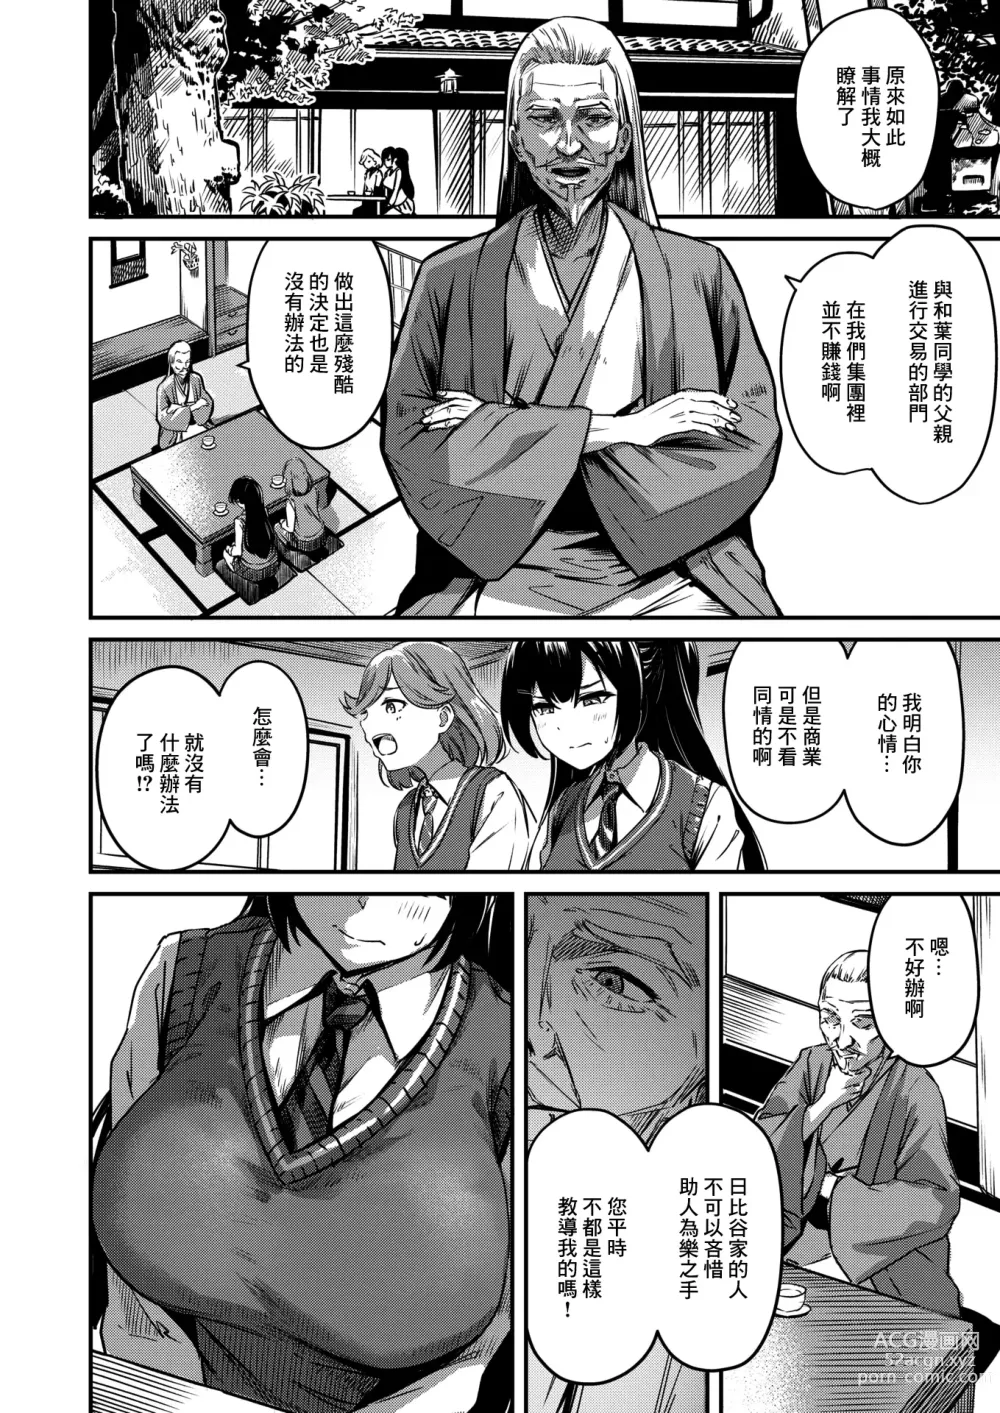 Page 5 of manga Naraba Kono Mi o Sasageyou